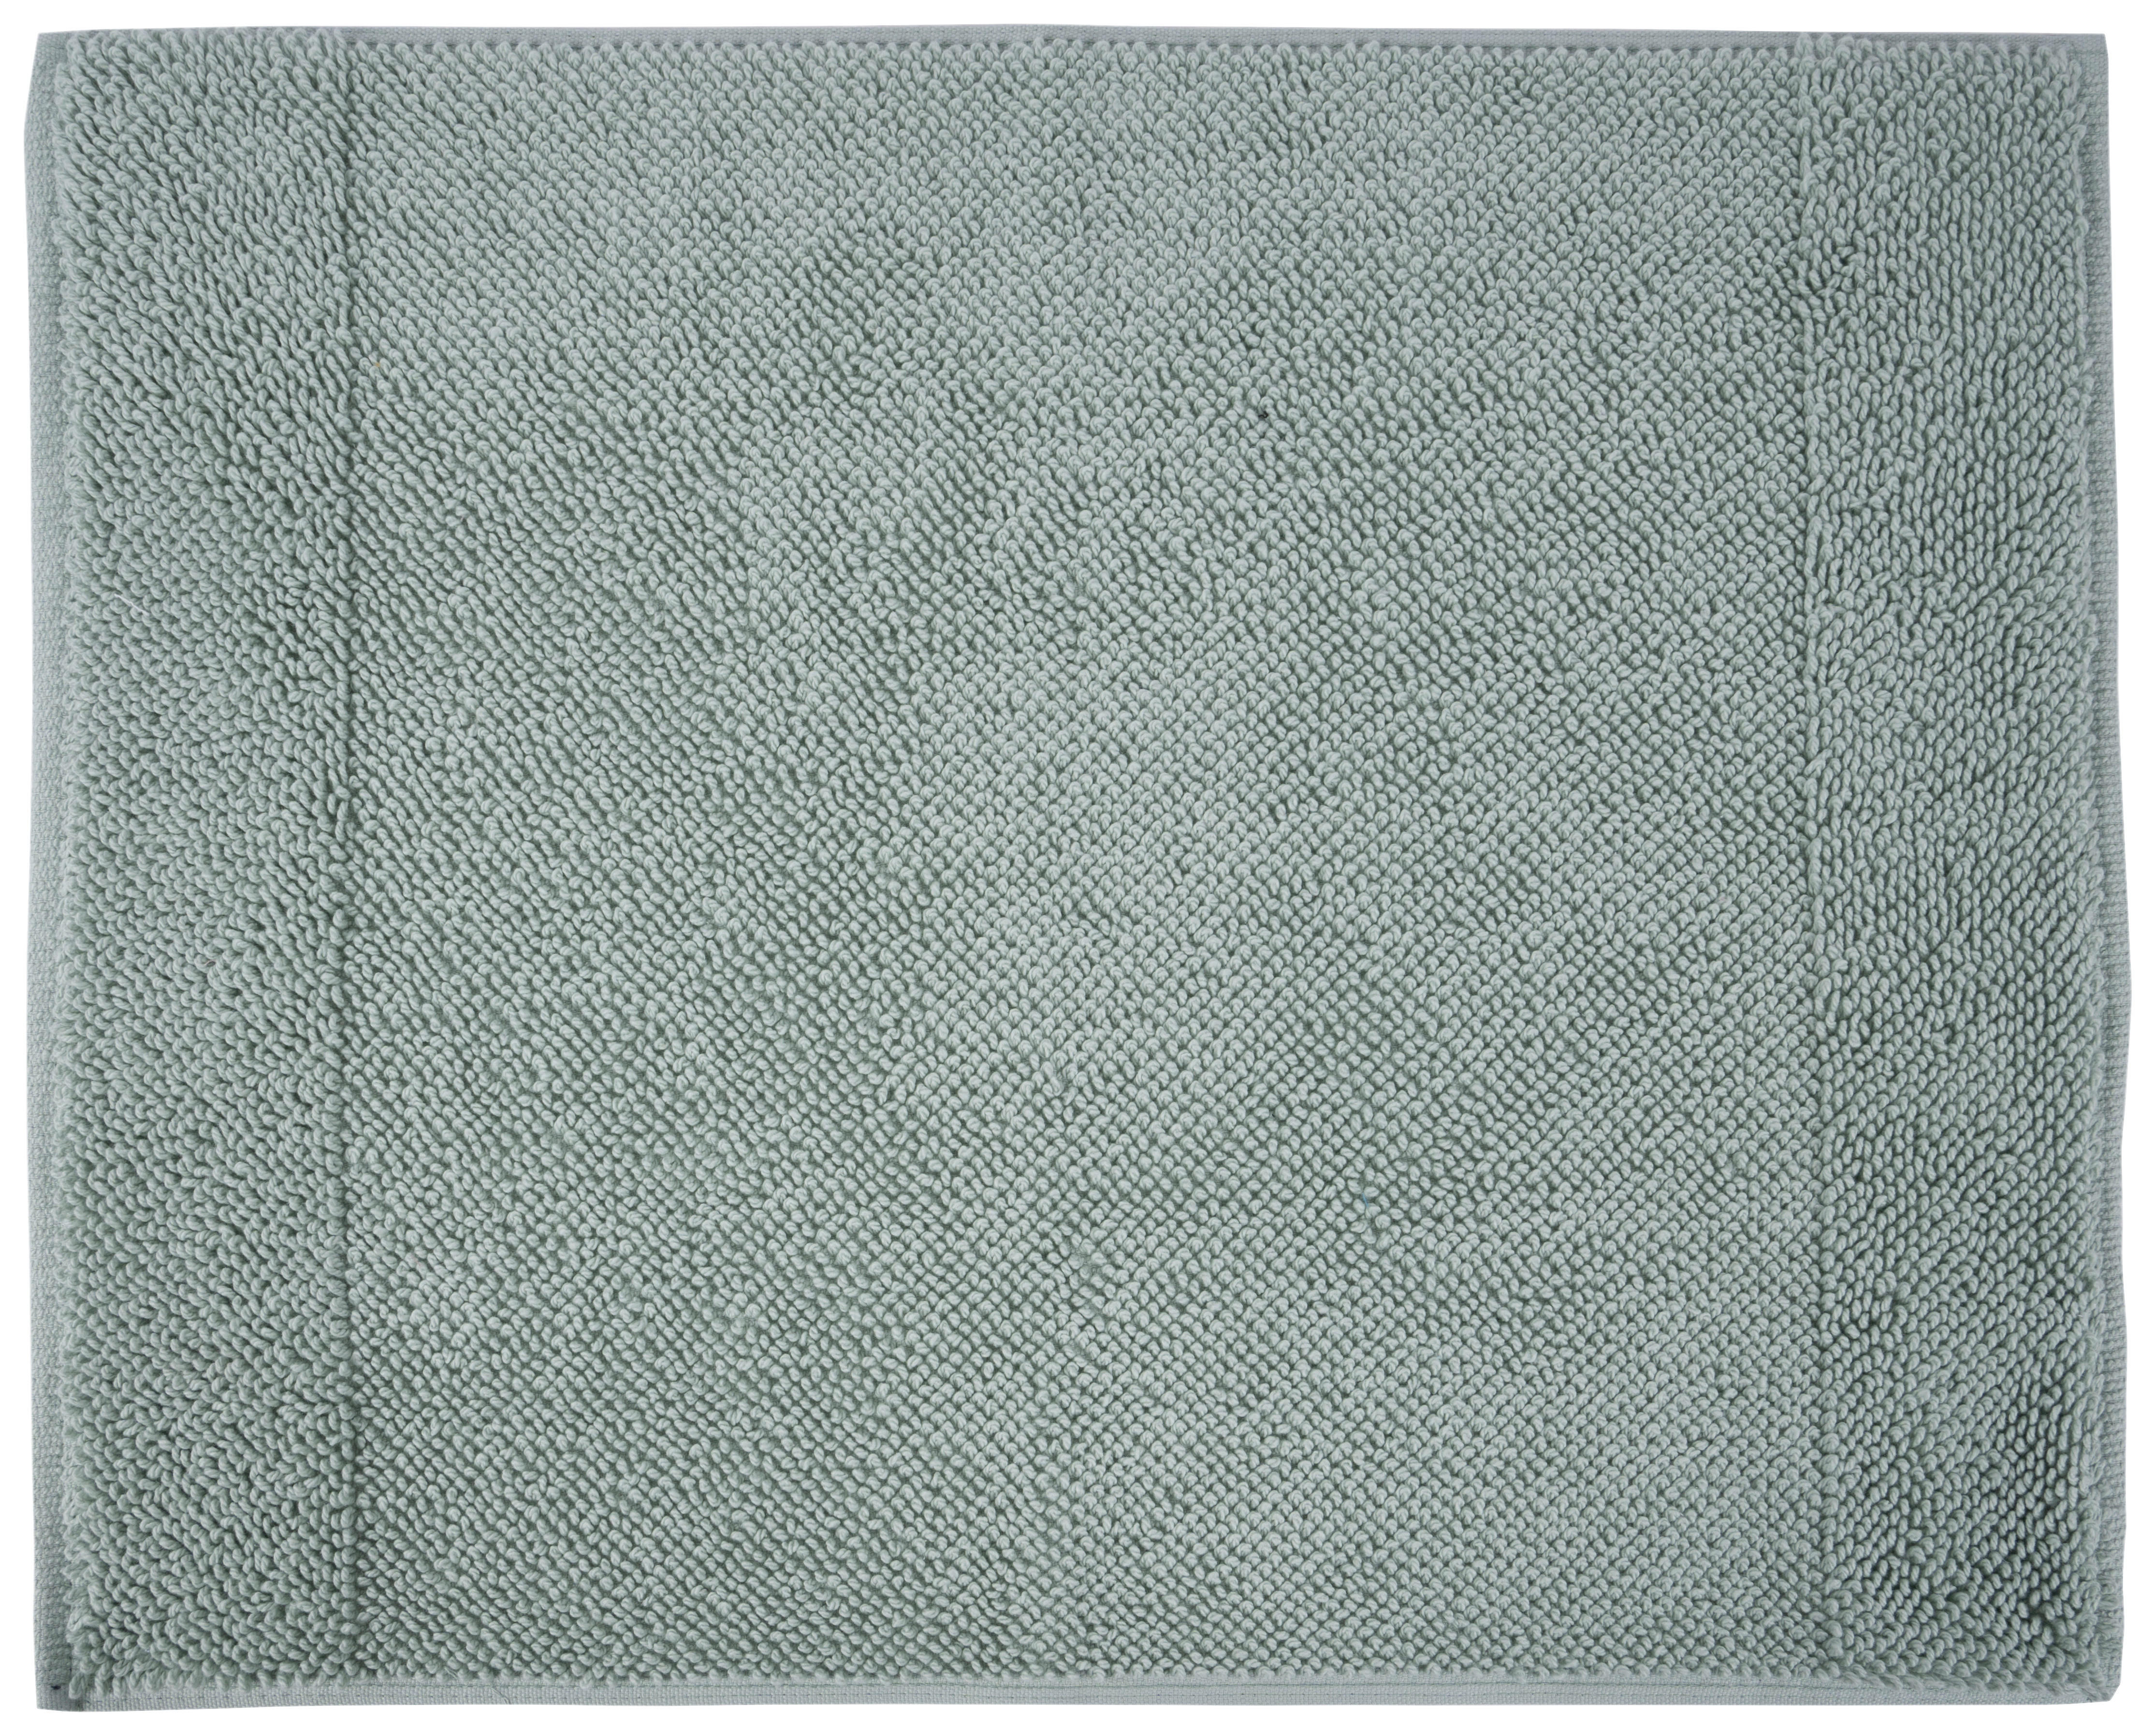 BADEMATTE 50/60 cm  - Mintgrün, KONVENTIONELL, Textil (50/60cm) - Bio:Vio